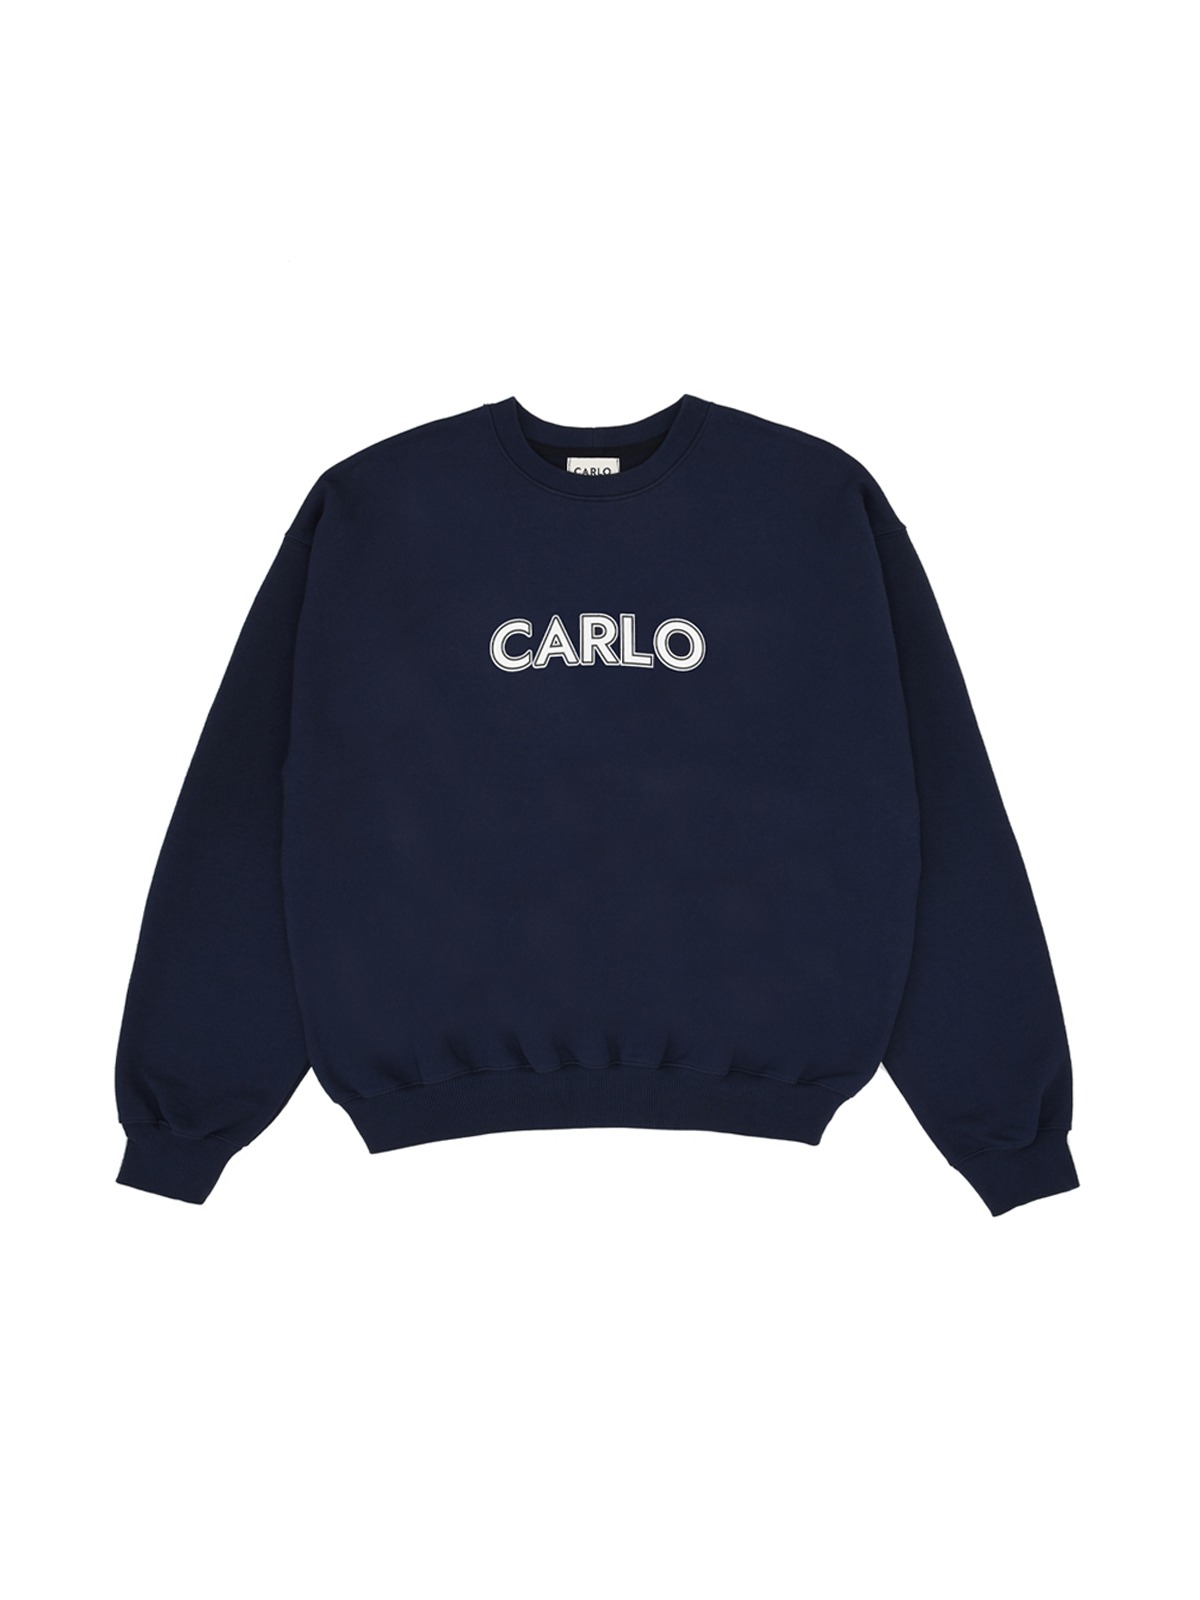 CARLO Sweatshirts Navy